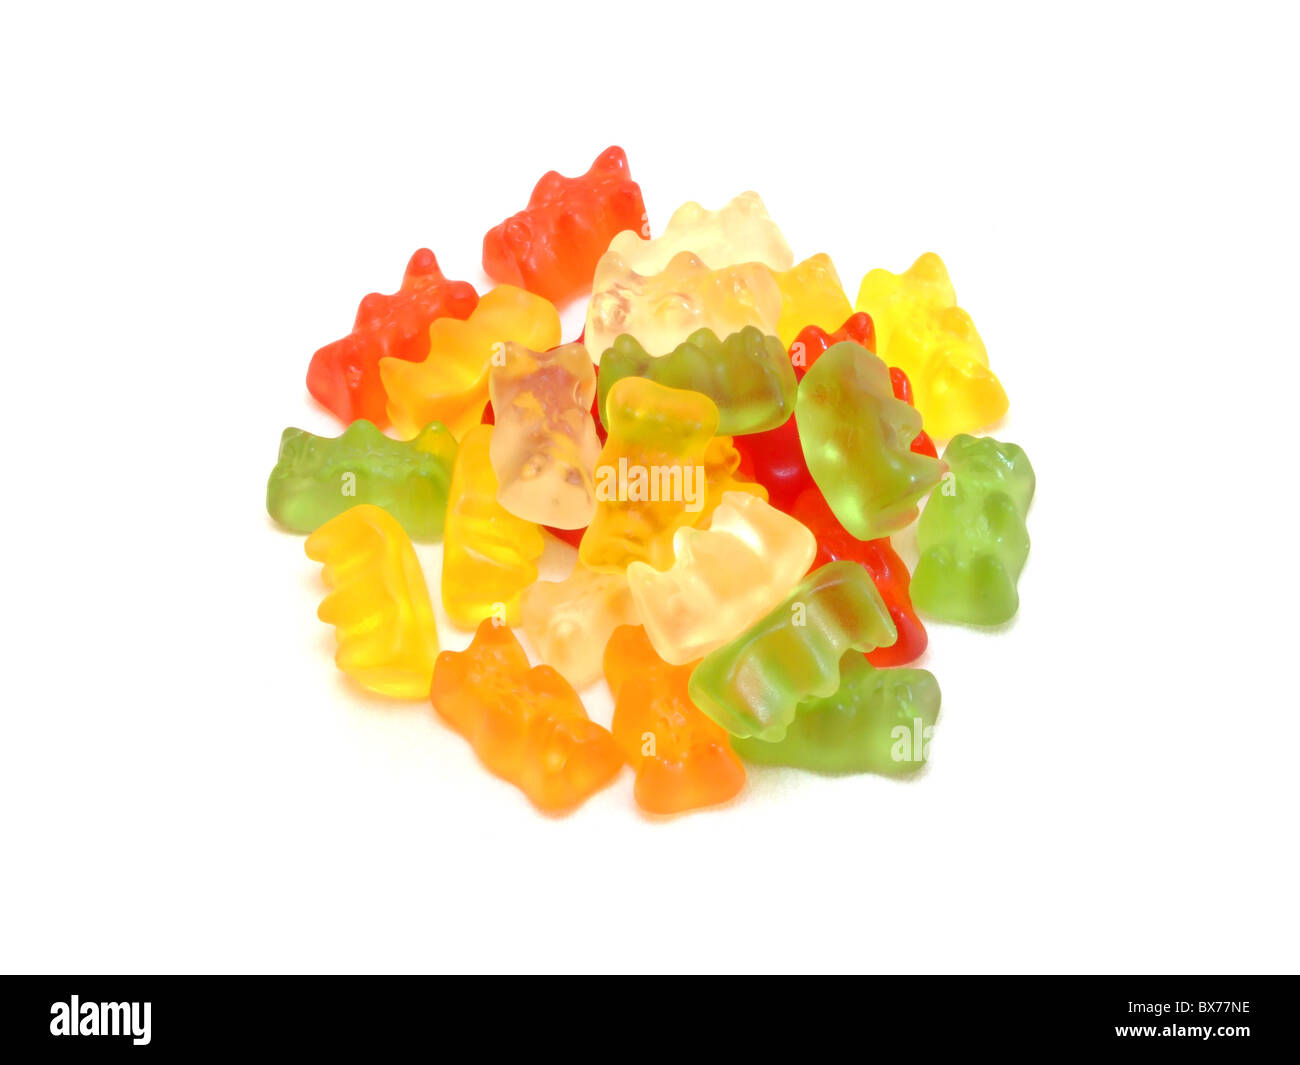 Gummibärchen / Gummy bears Stock Photo